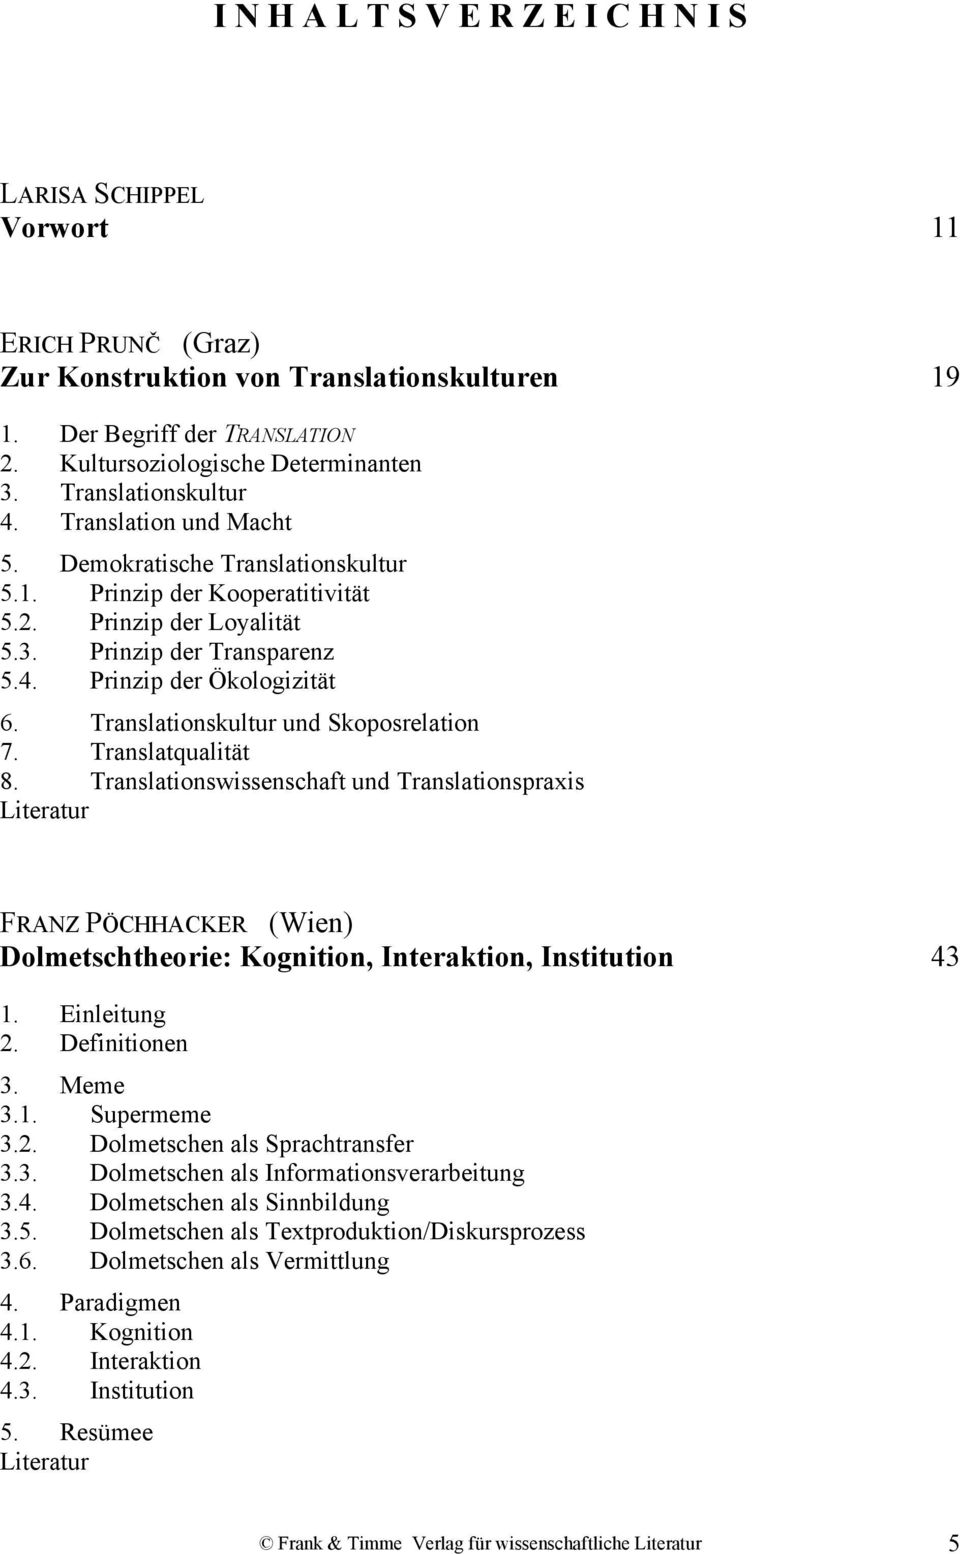 Translationskultur und Skoposrelation 7. Translatqualität 8. Translationswissenschaft und Translationspraxis FRANZ PÖCHHACKER (Wien) Dolmetschtheorie: Kognition, Interaktion, Institution 43 1.